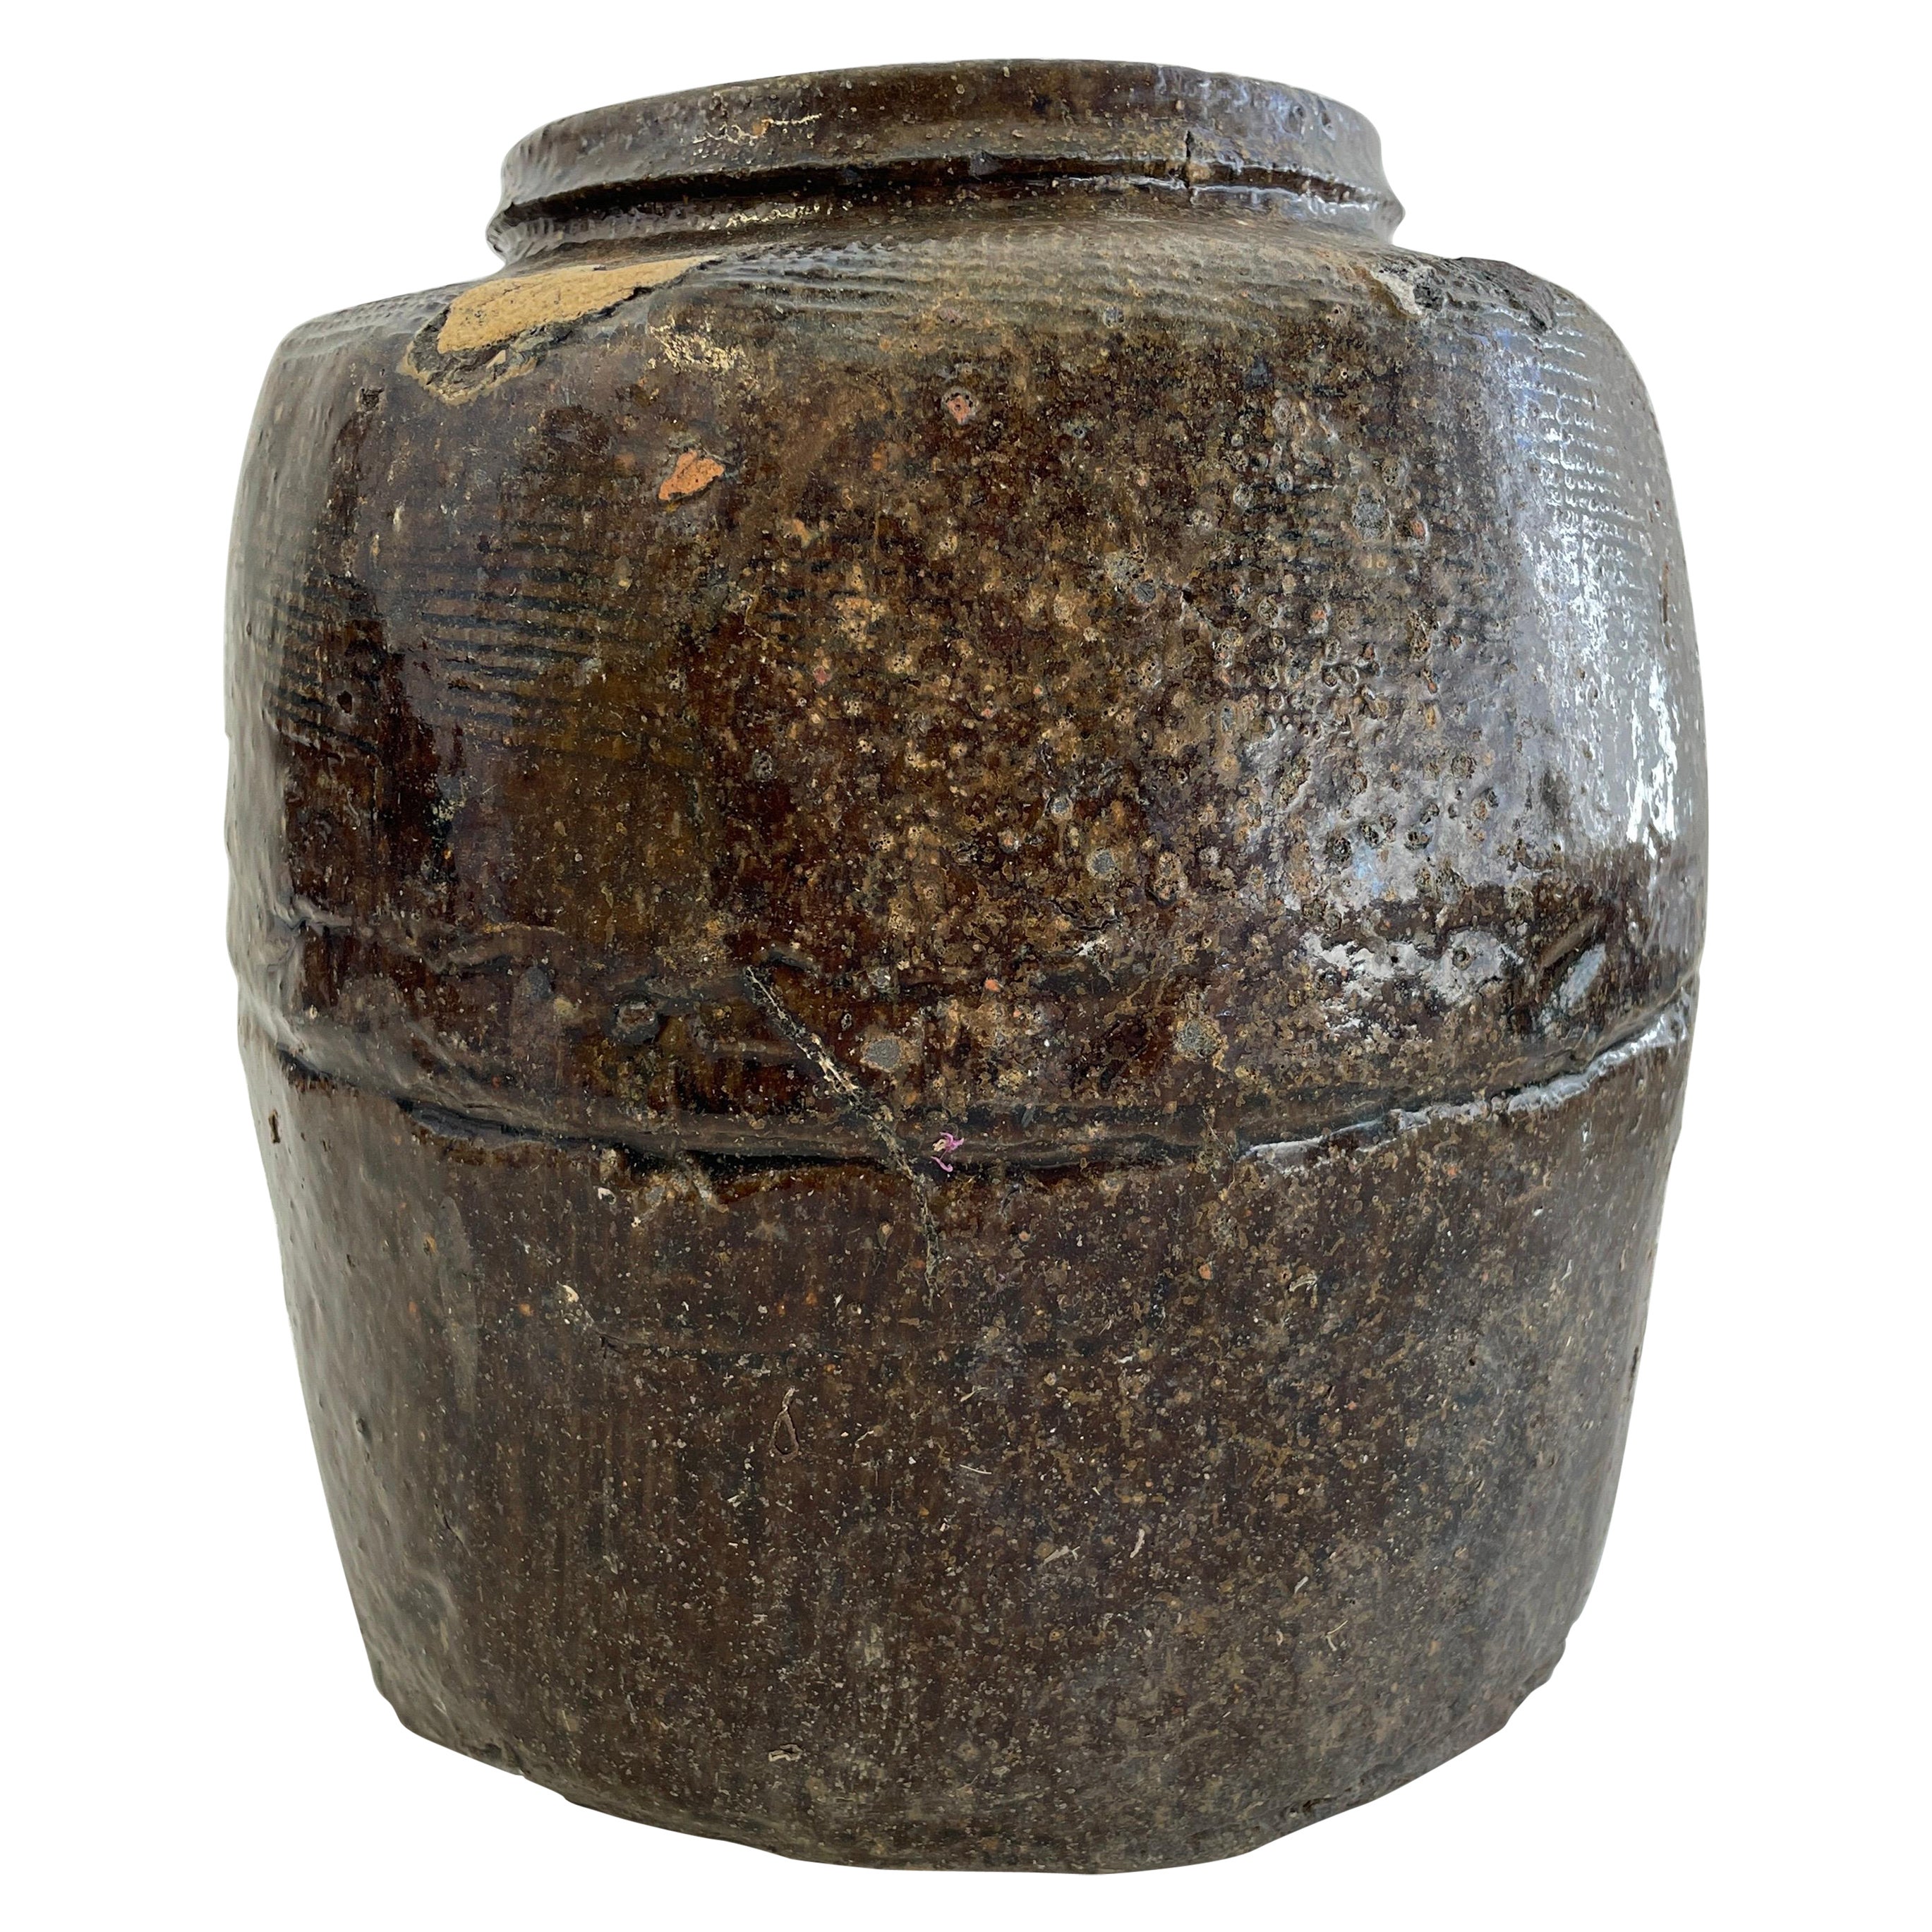 Vieille poterie en terre cuite émaillée brune